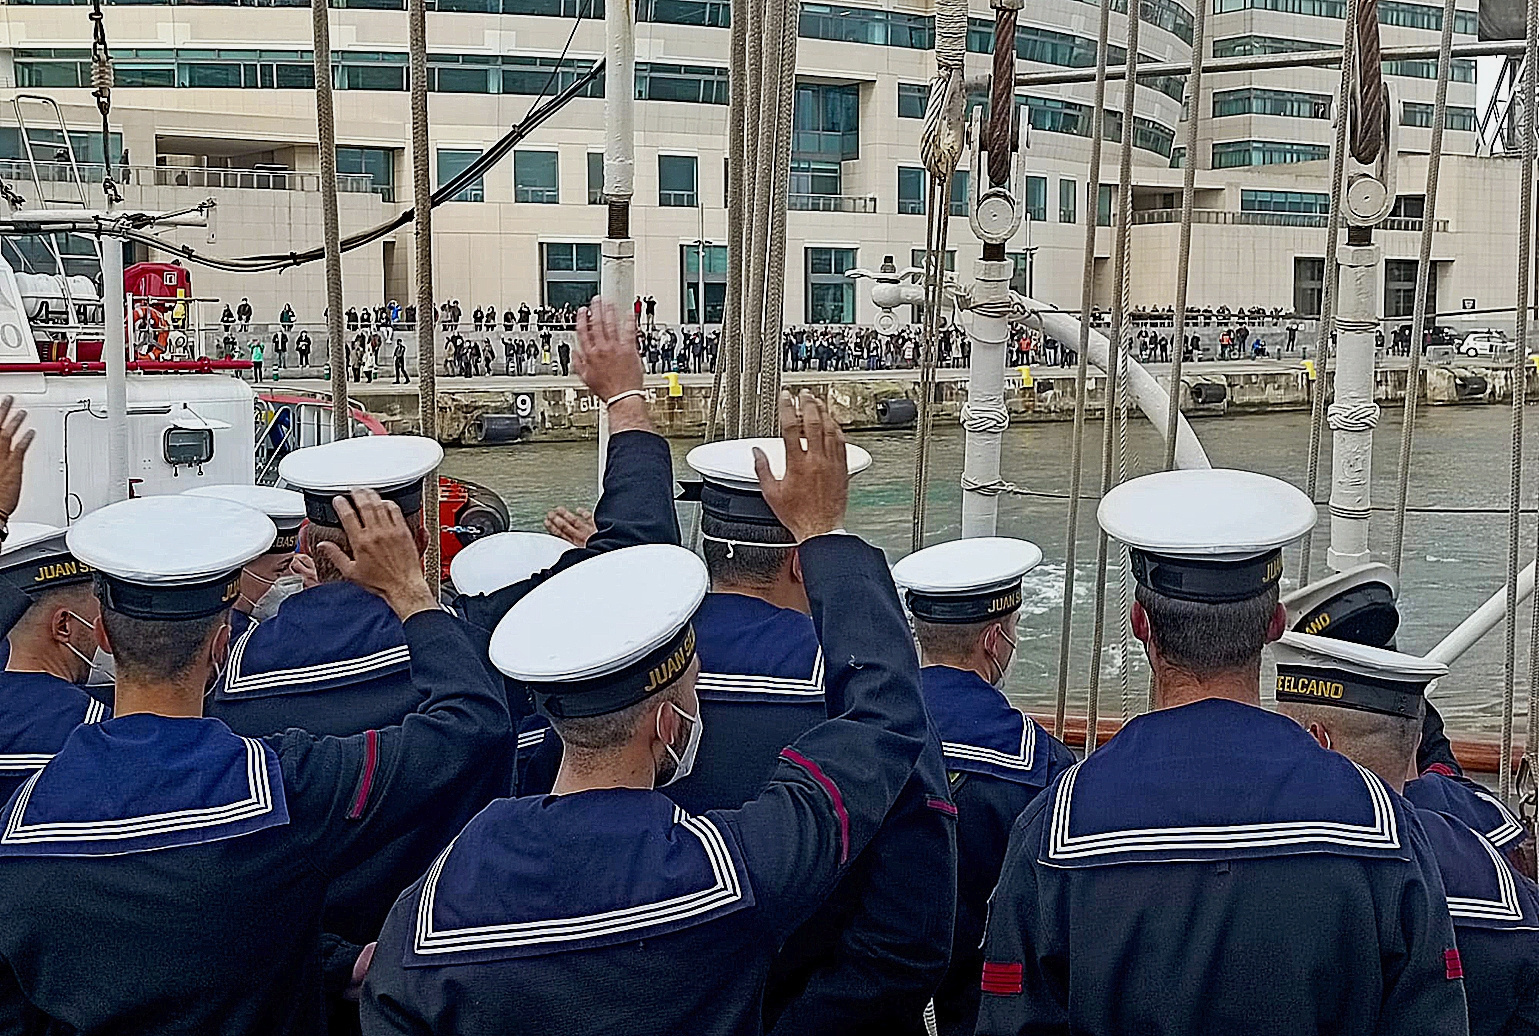 La tripulacin del buque Juan Sebastin Elcano saluda a los curiosos del puerto de Barcelona.